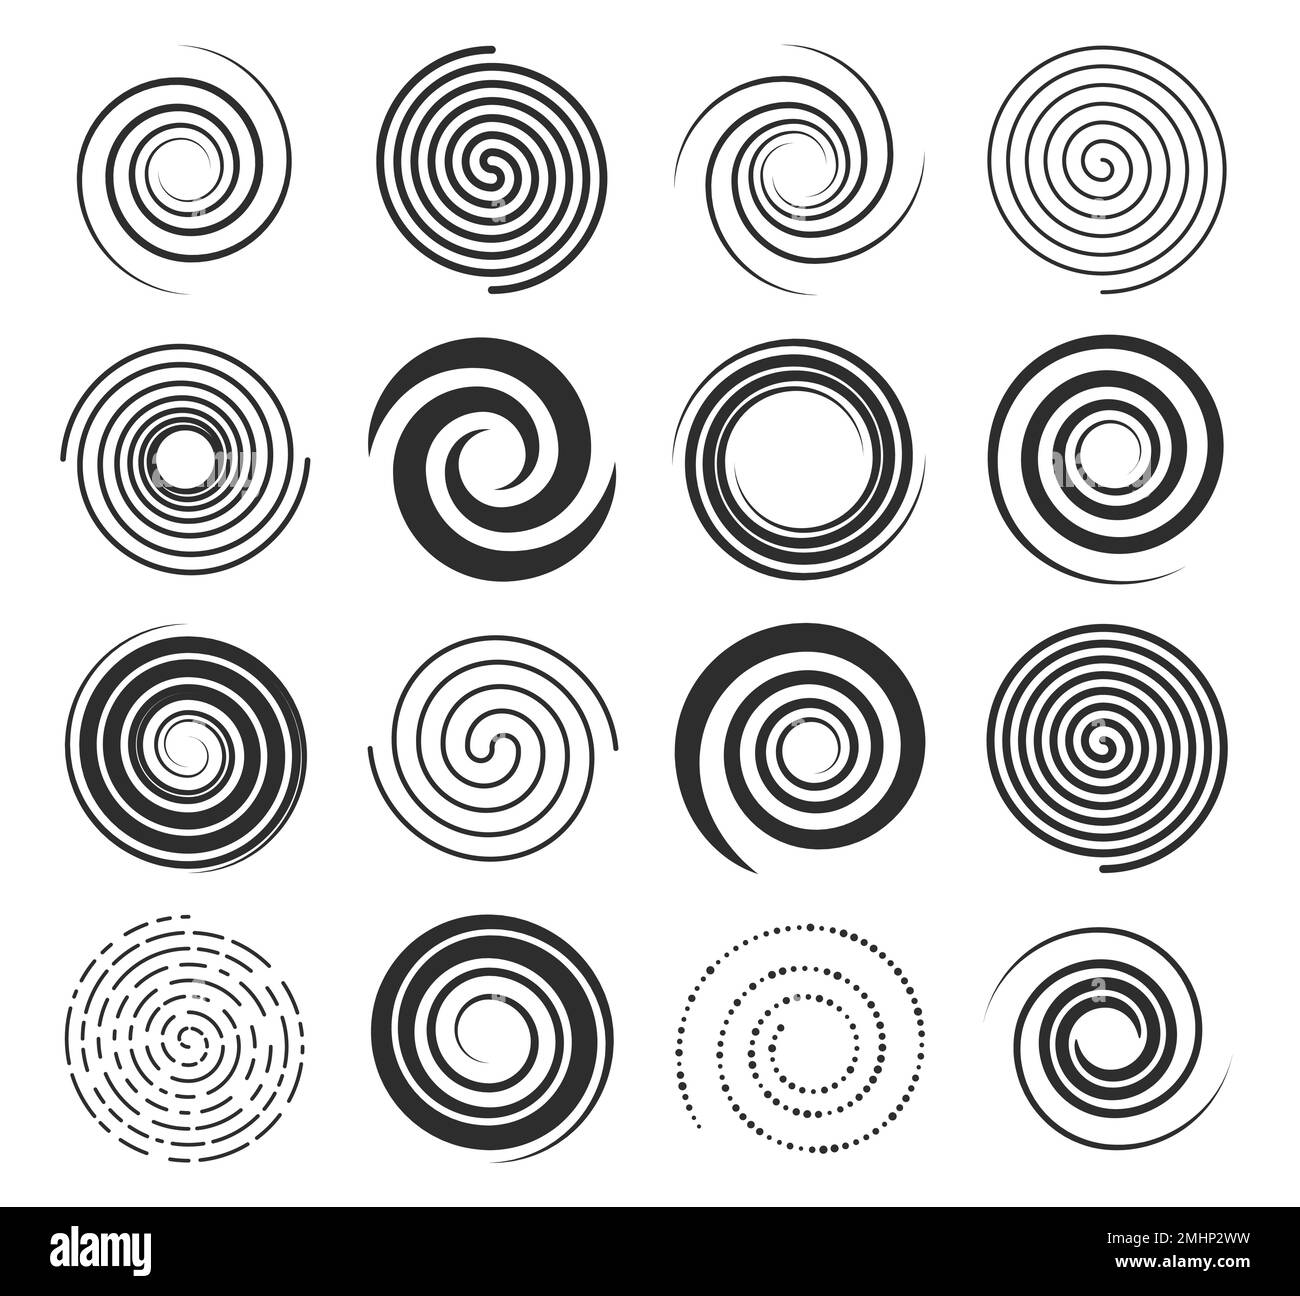 Icone di turbolenza a spirale, linee di forma circolare e simboli di turbolenza, movimento circolare vettoriale ed elementi ipnotici. Le spirali girano in un disegno geometrico astratto, le linee radiali di velocità in torsioni e vortici Illustrazione Vettoriale